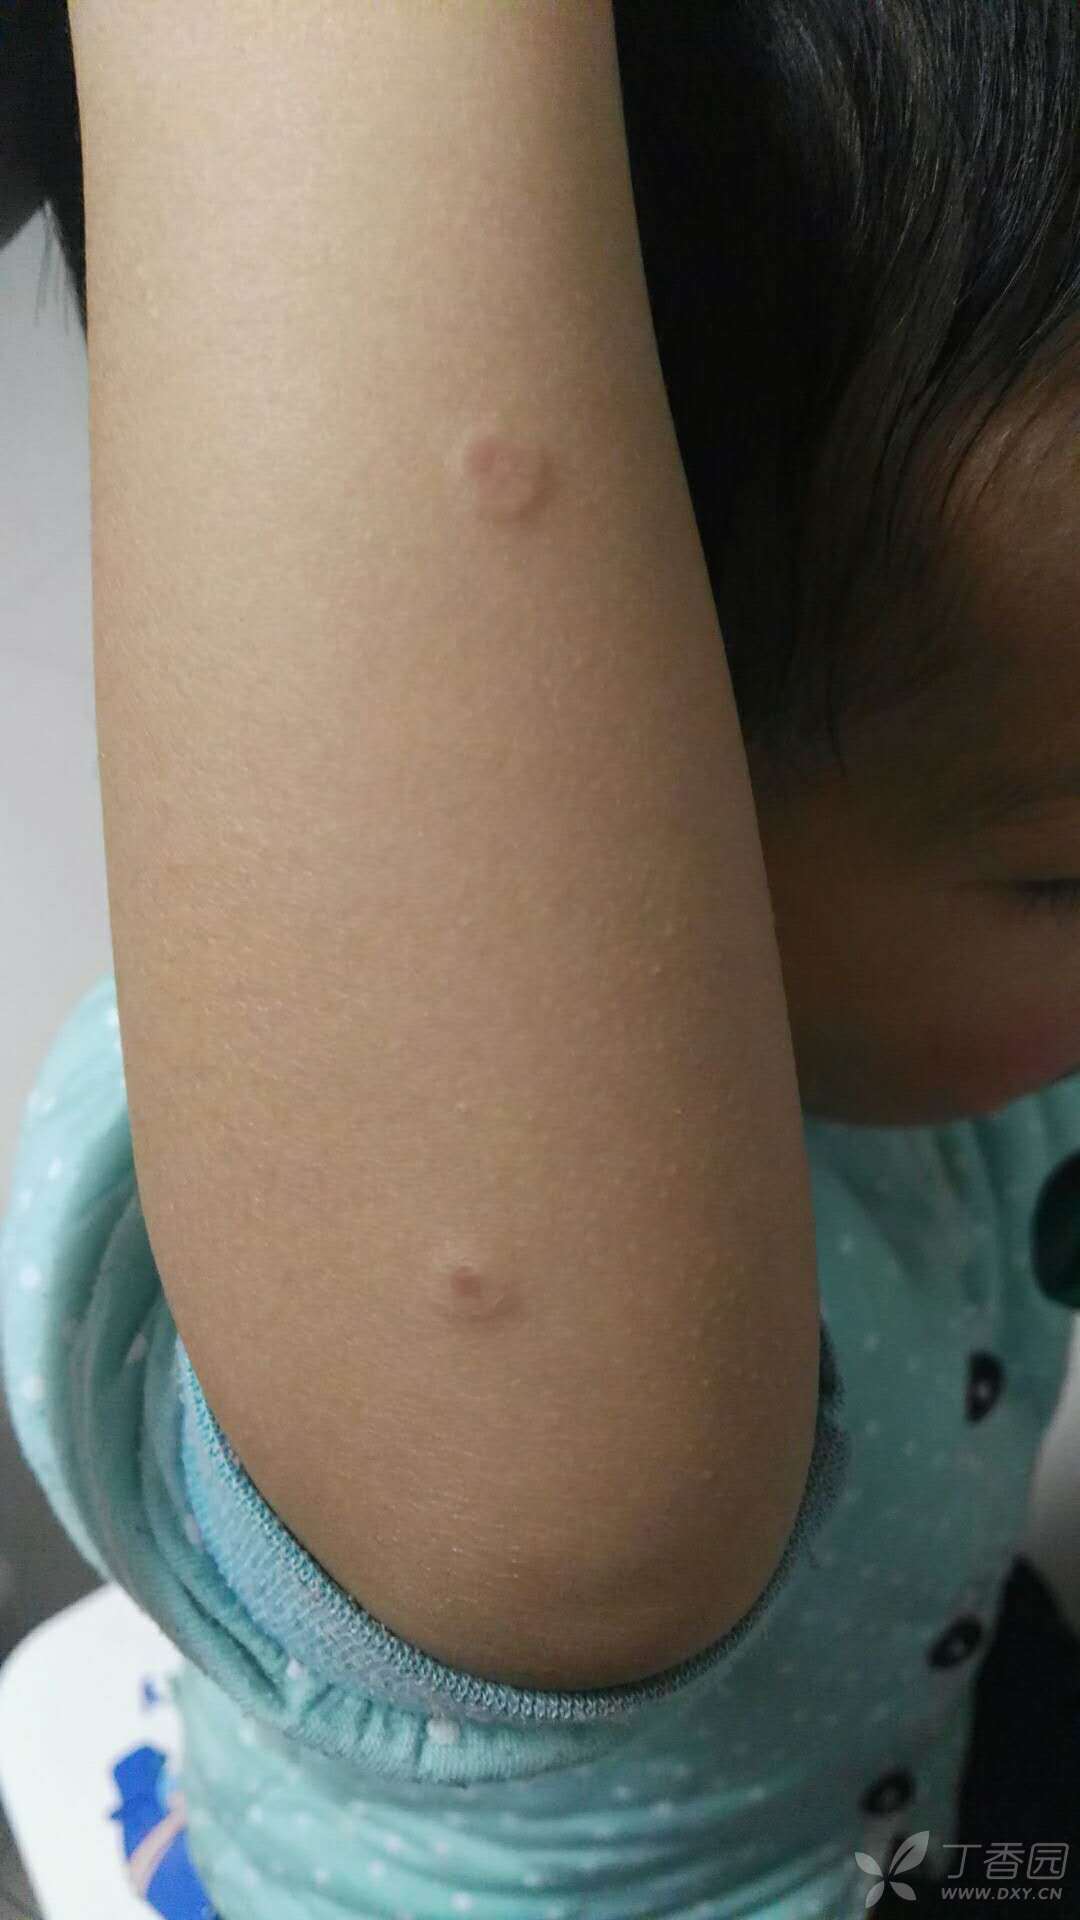 儿童圆形丘疹,中间有凹陷,无瘙痒